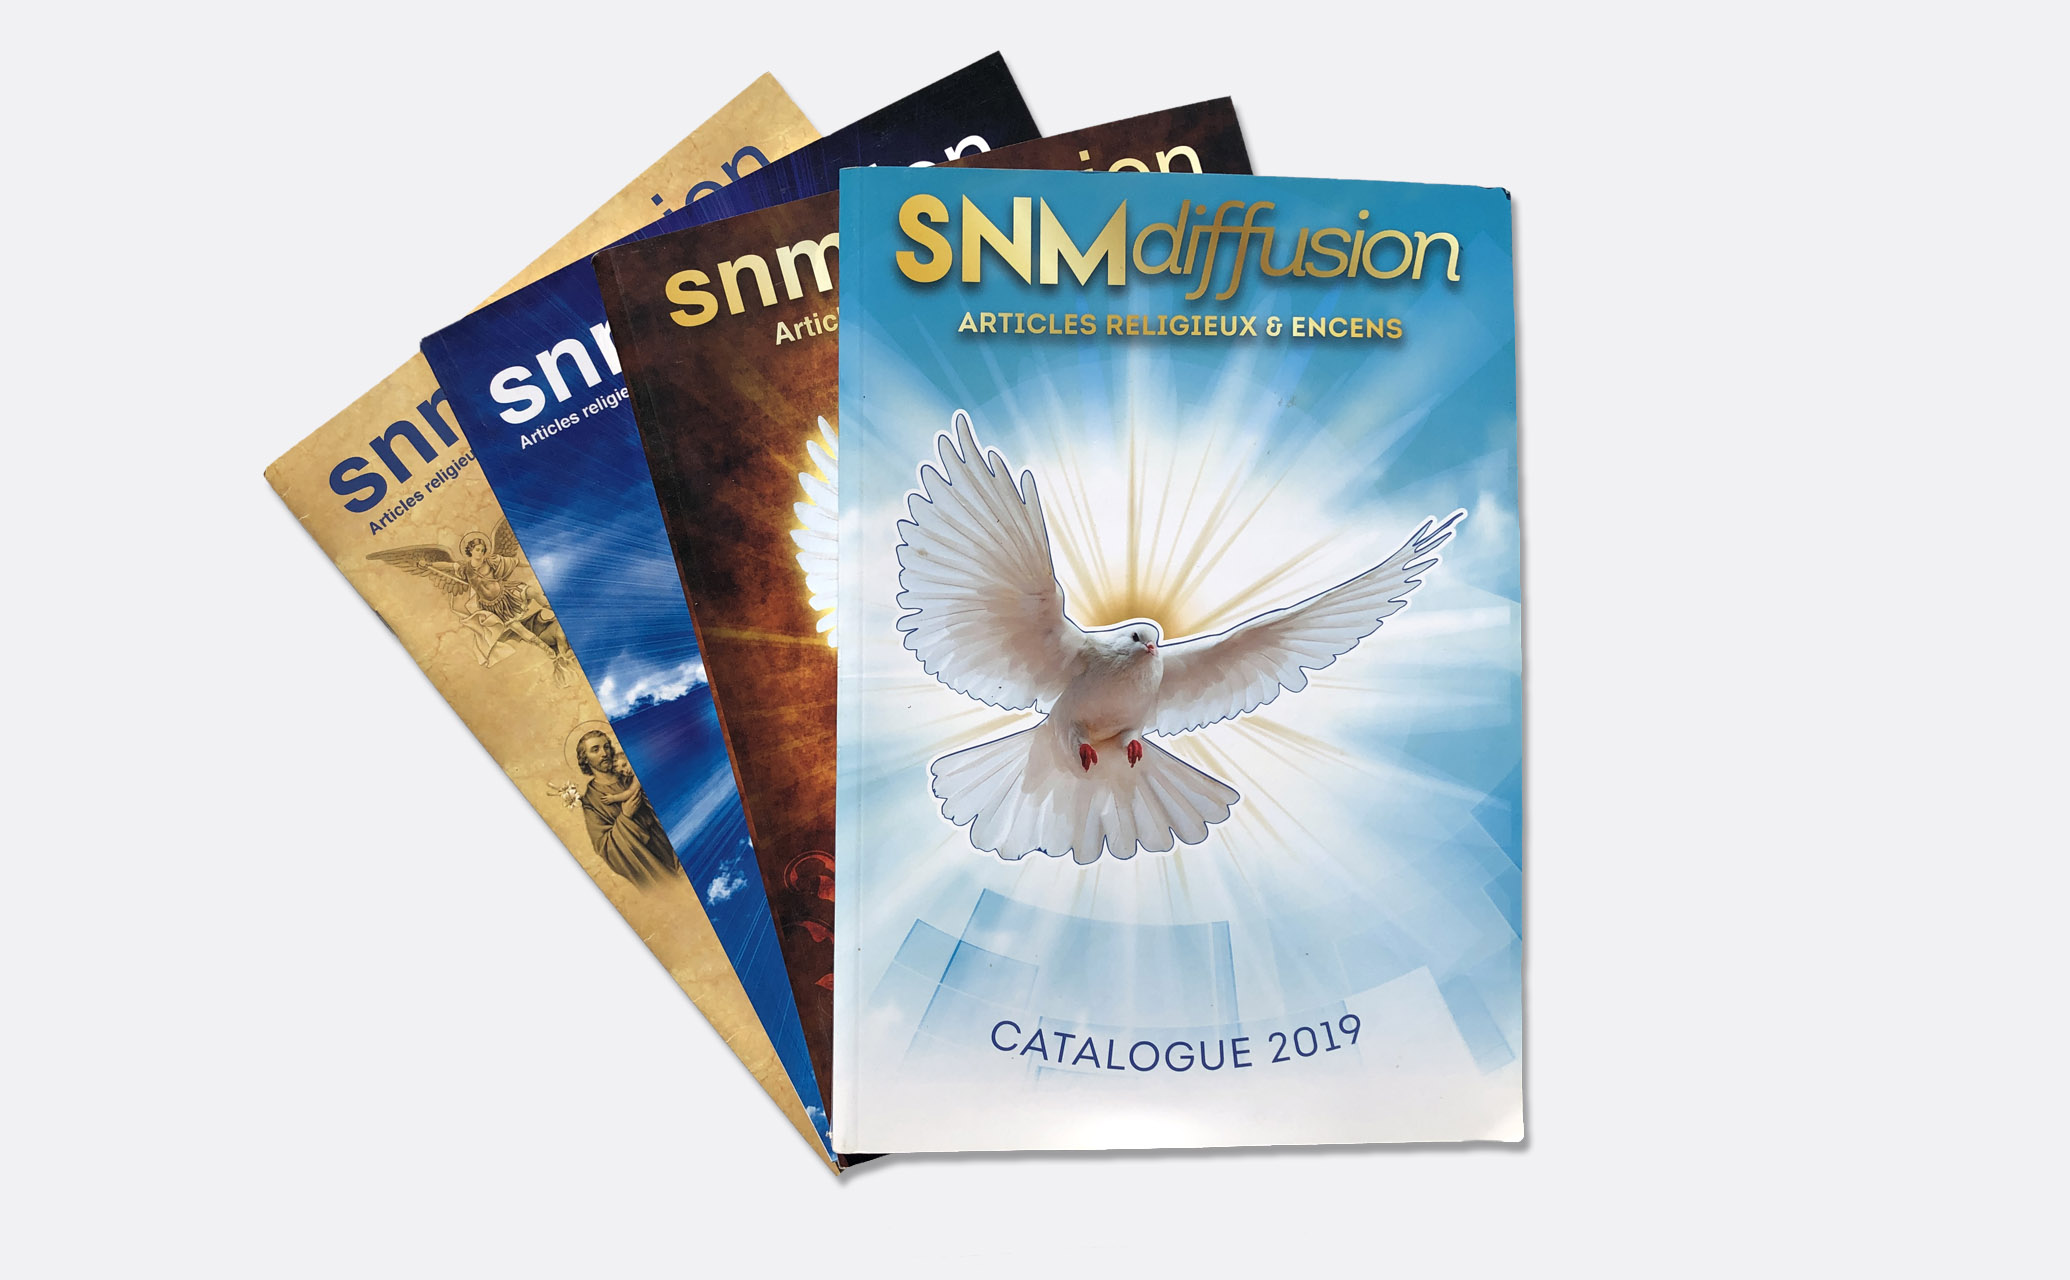 SNM-diffusion-articles religieux & encens-édition